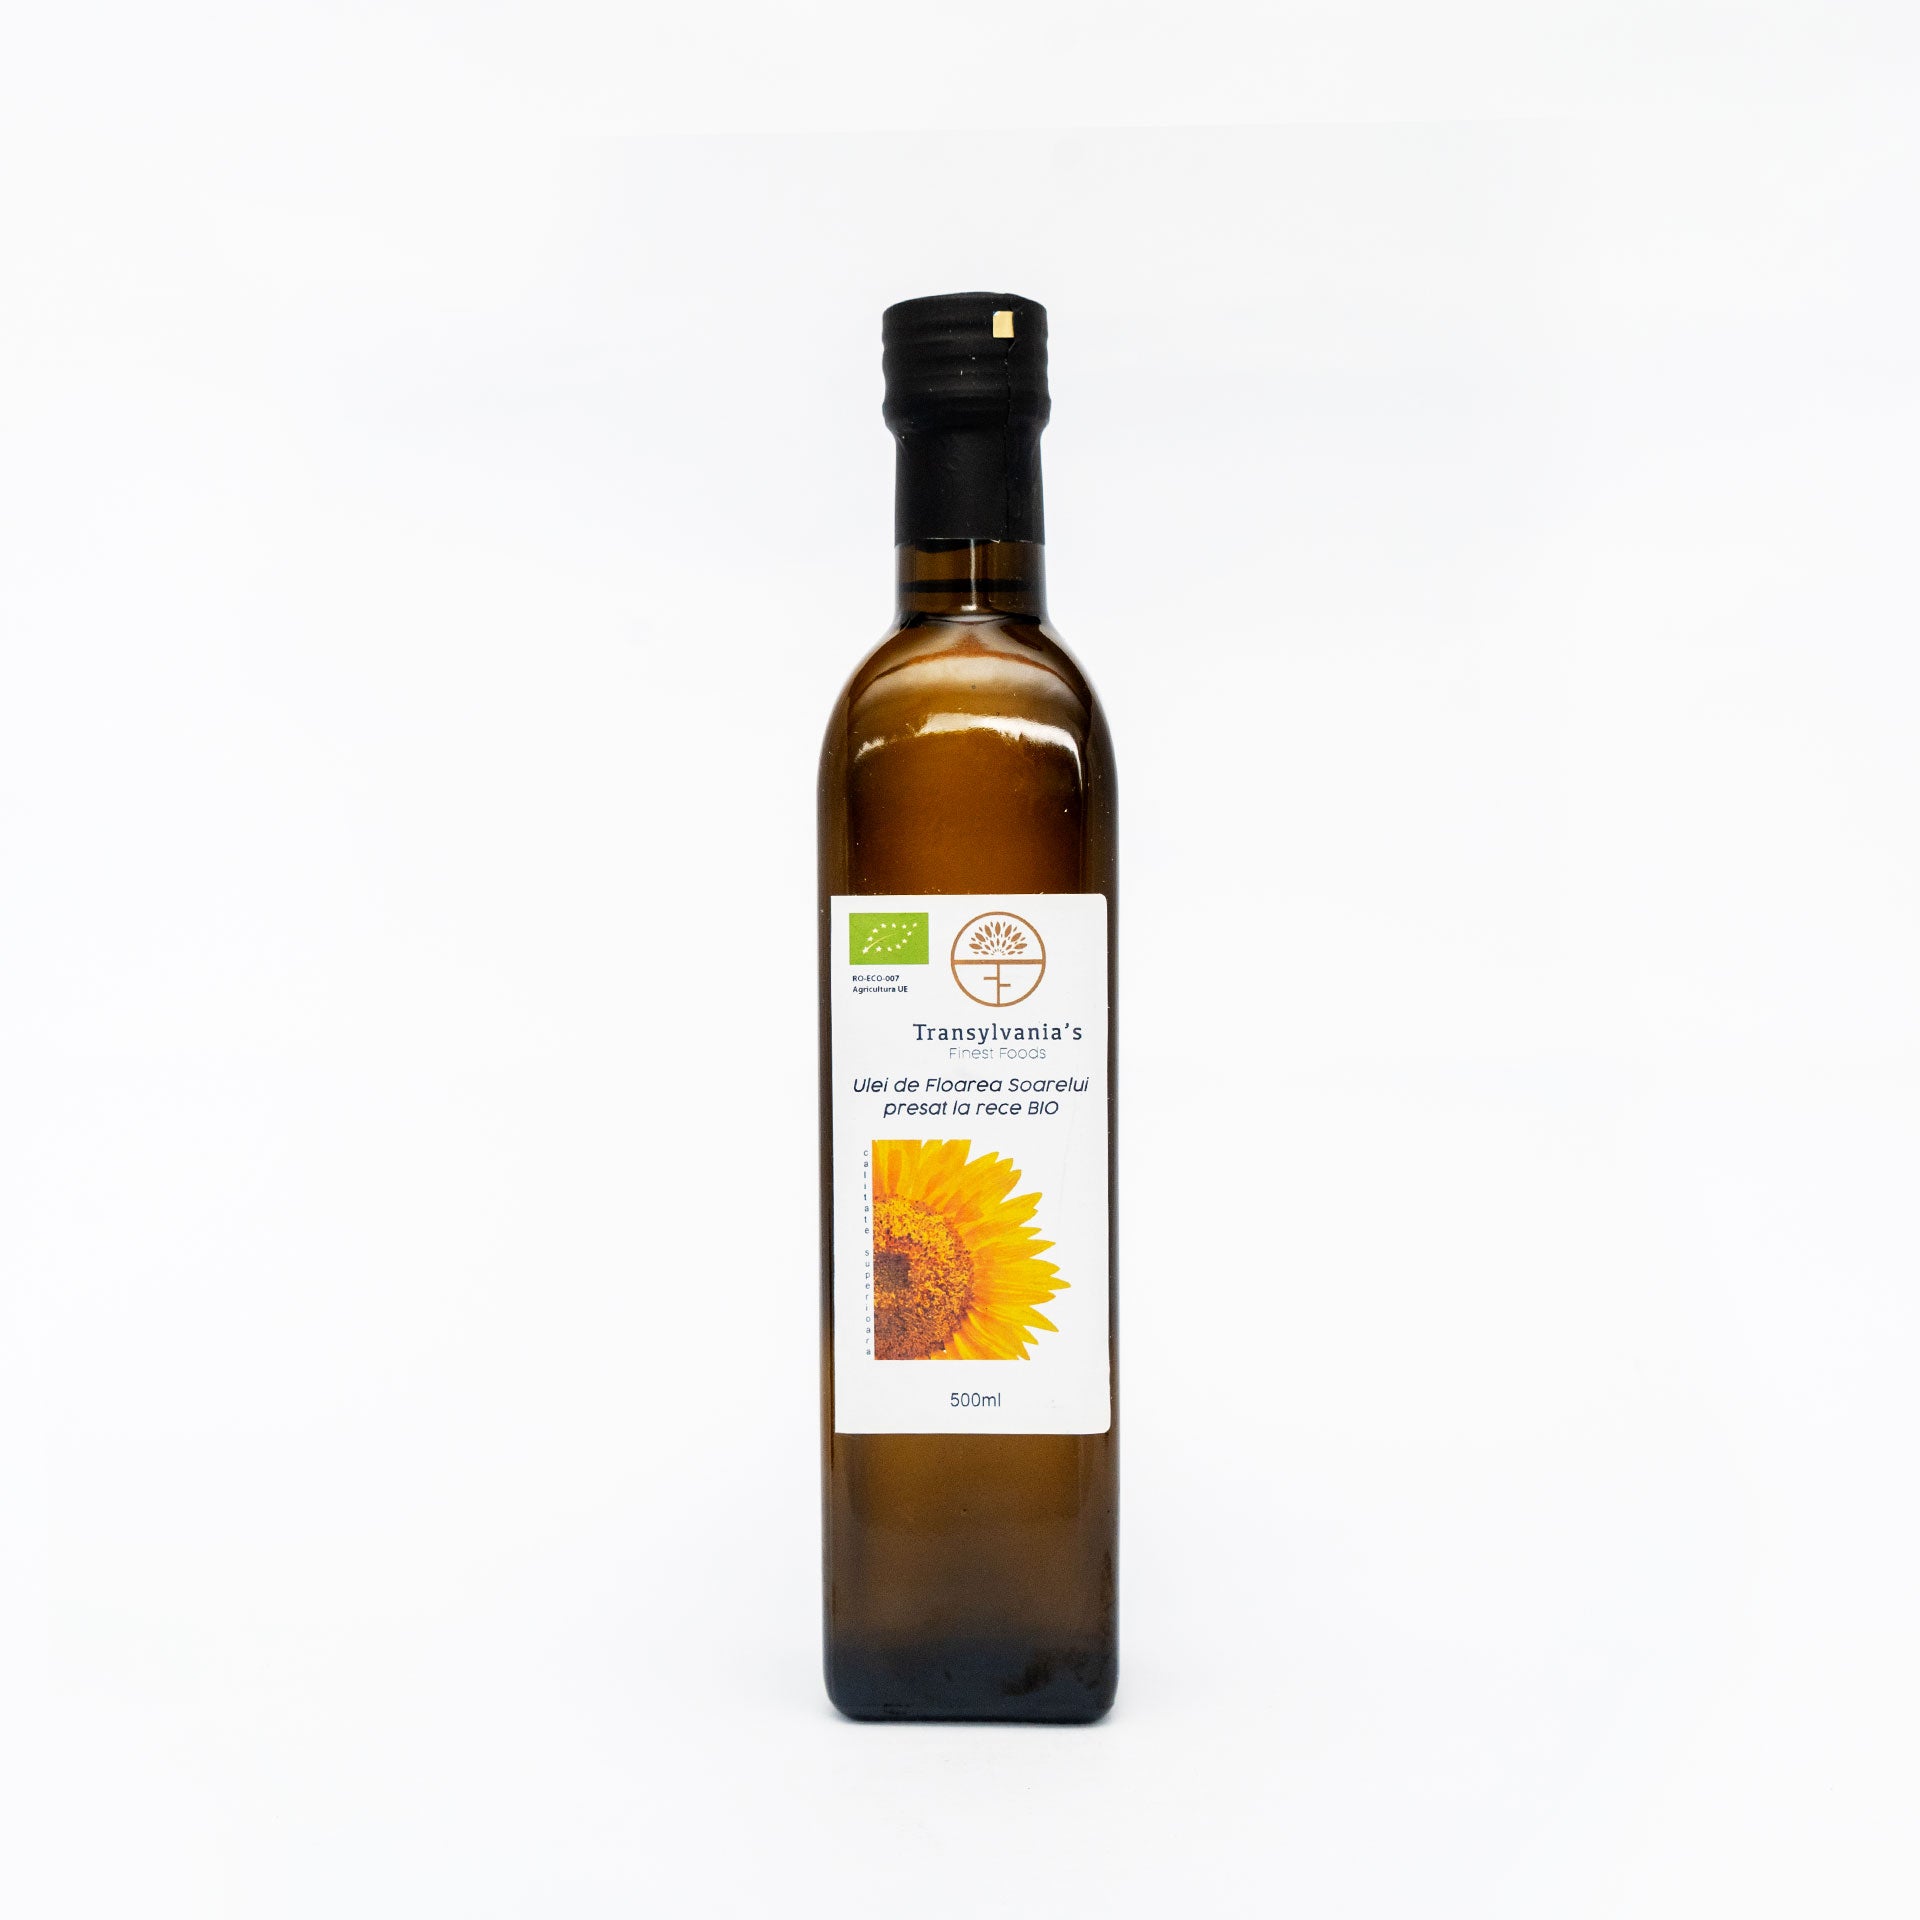 Ulei de floarea soarelui presat la rece BIO, 500ml, Transylvania's Finest Foods